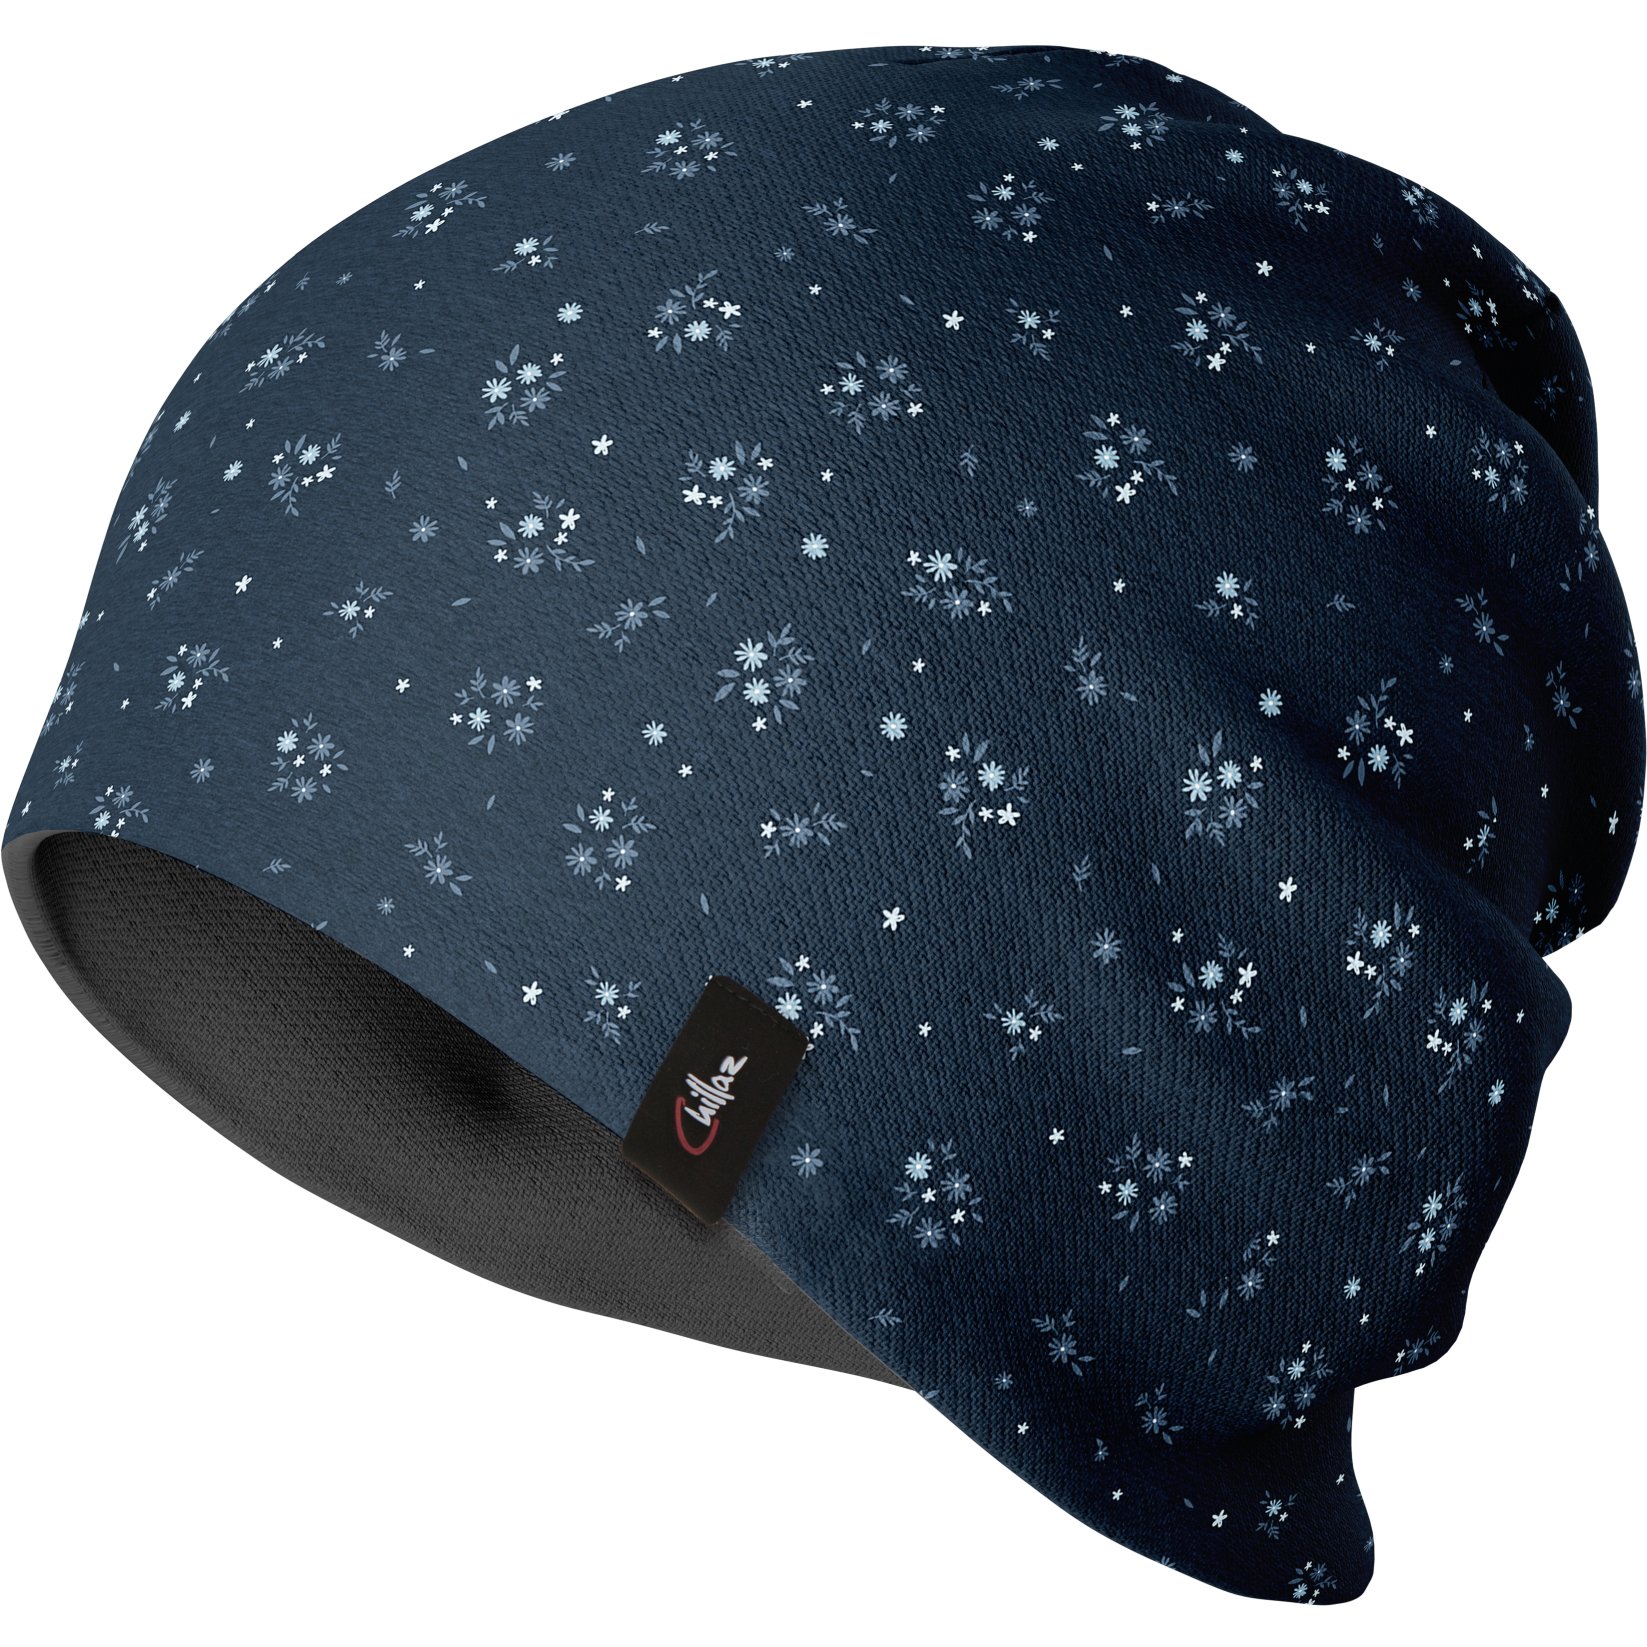 Produktbild von Chillaz Activ Flower Mütze - dark blue